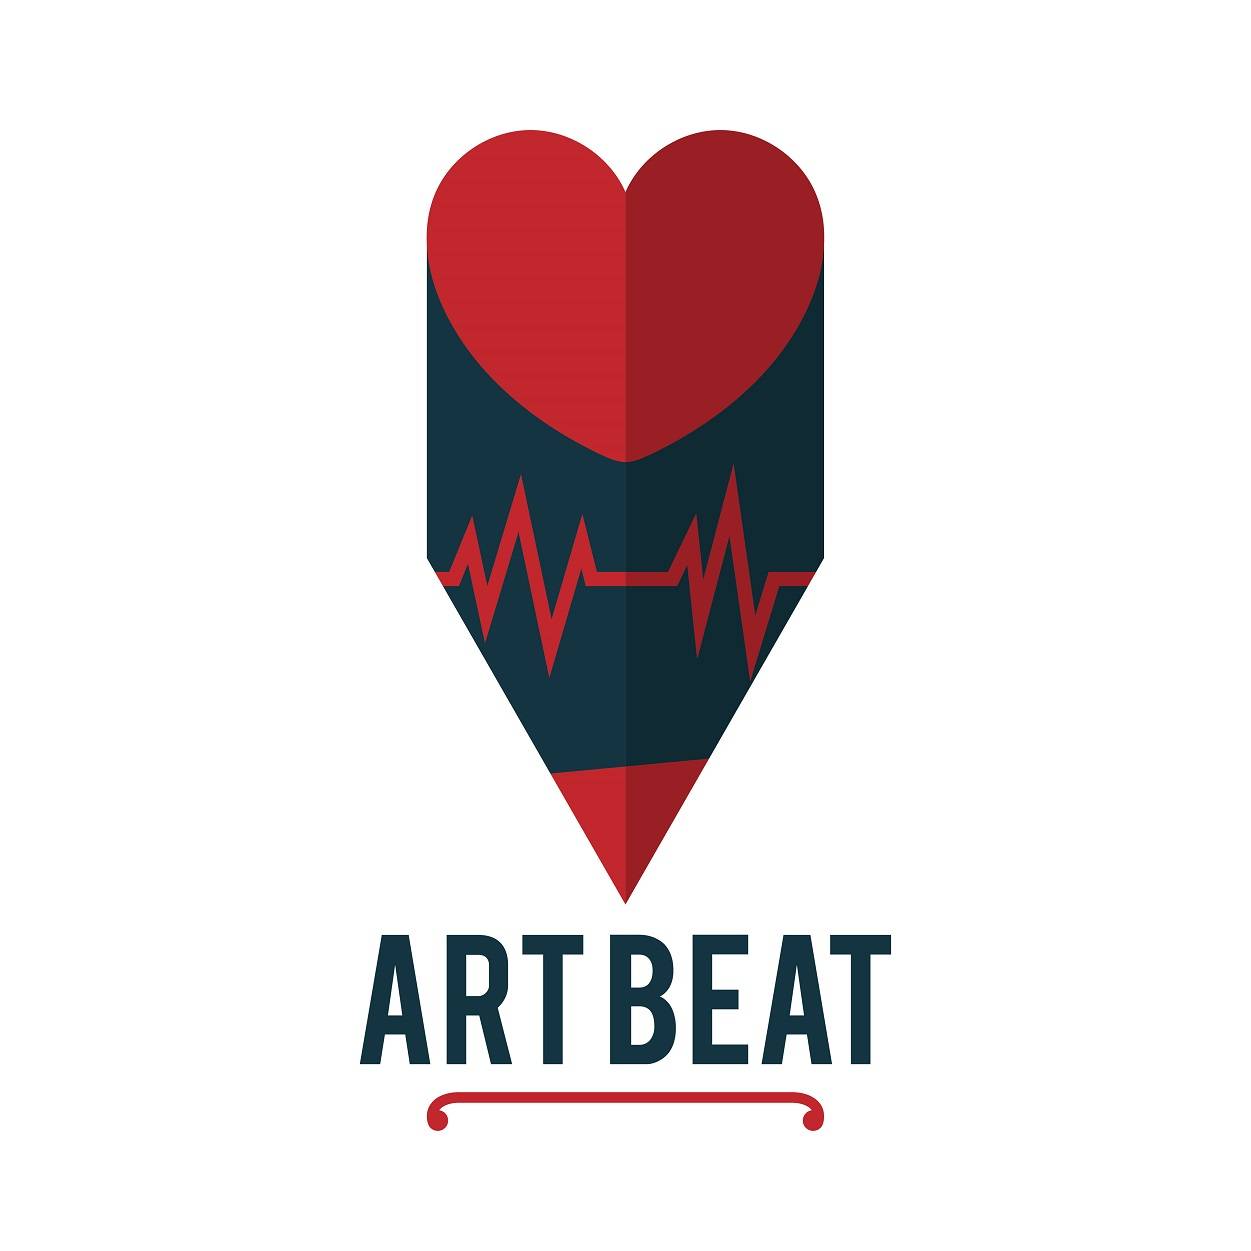 Art beat pencil shape logo